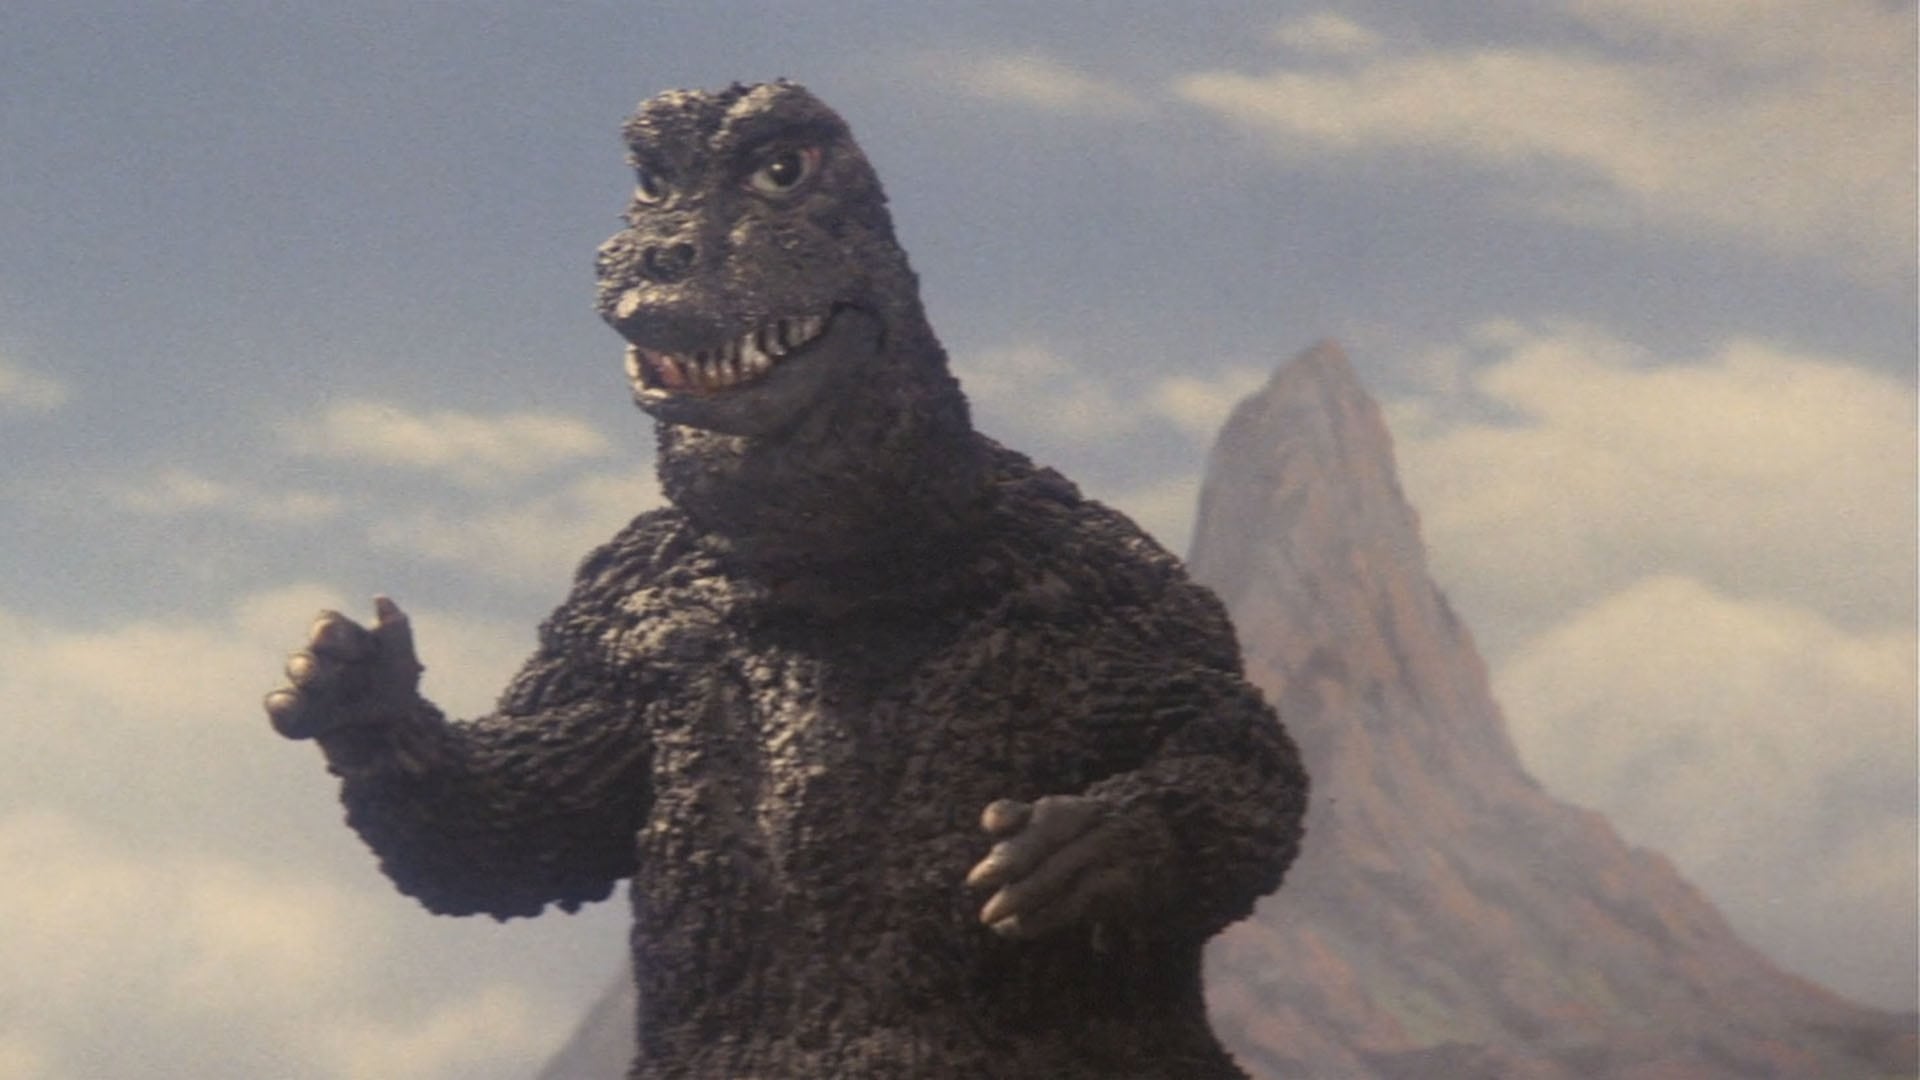 Il figlio di Godzilla (1967)